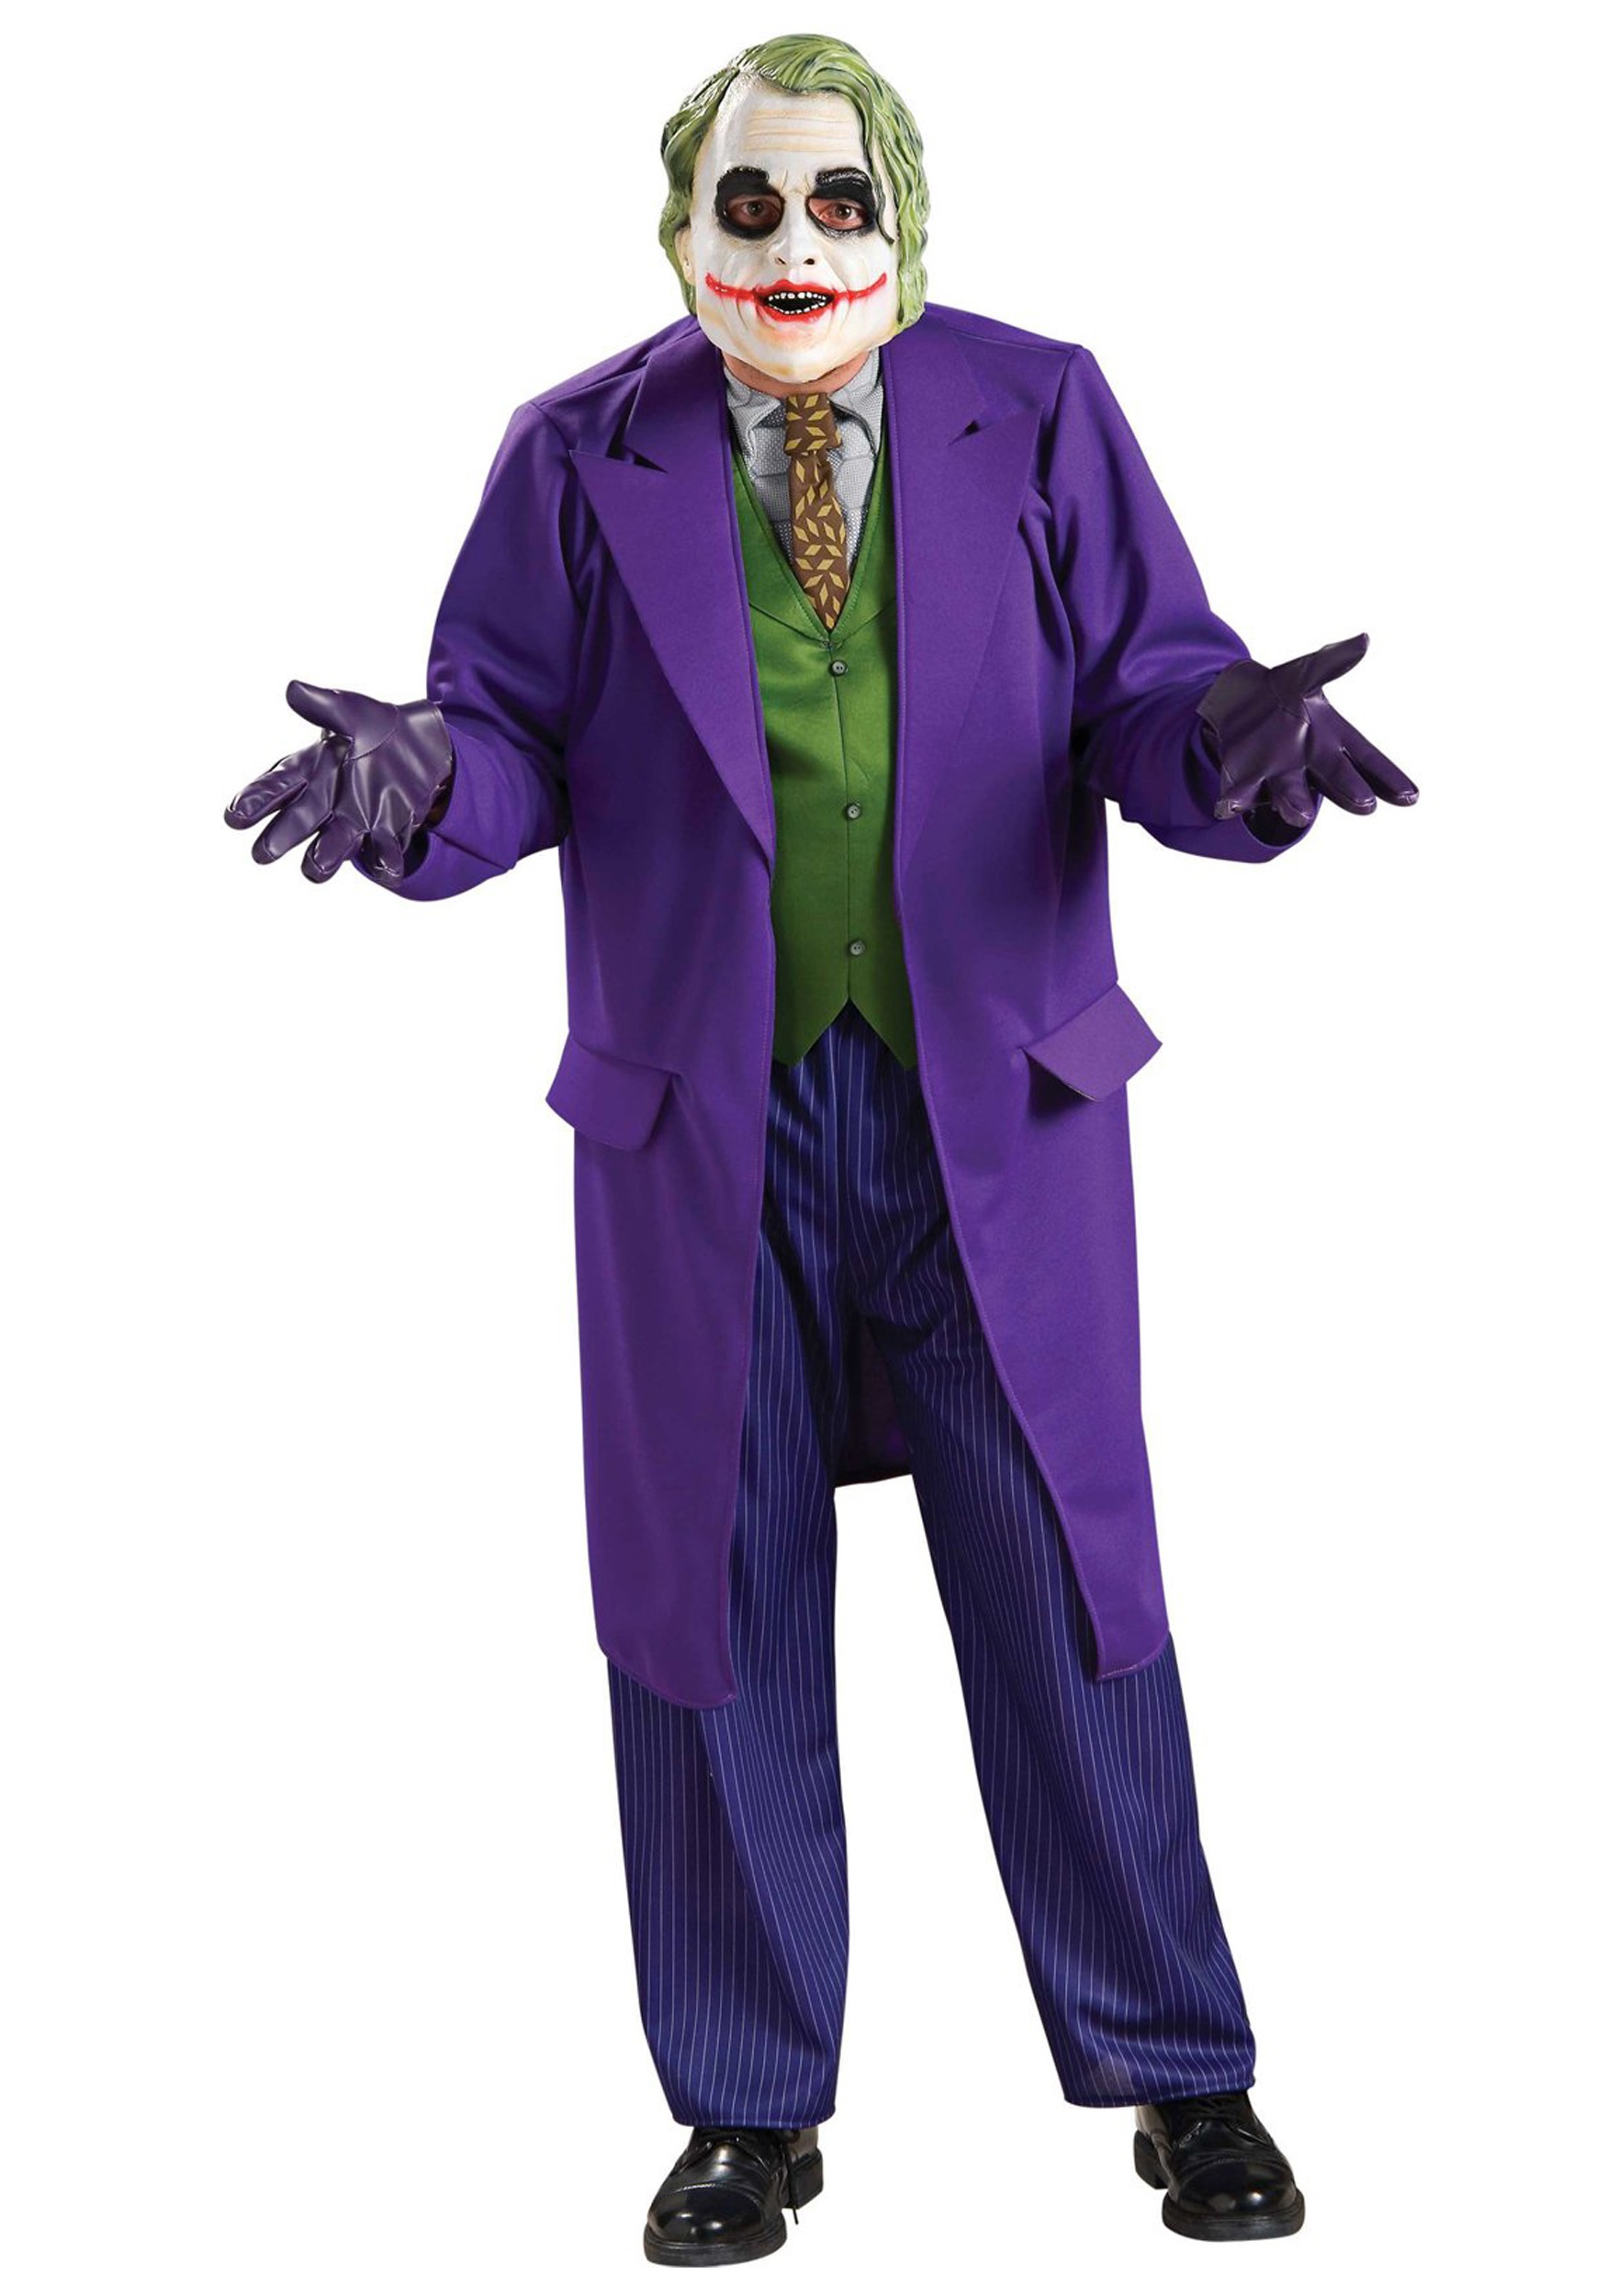 Image of Adult Joker Halloween Costume ID RU888632-ST